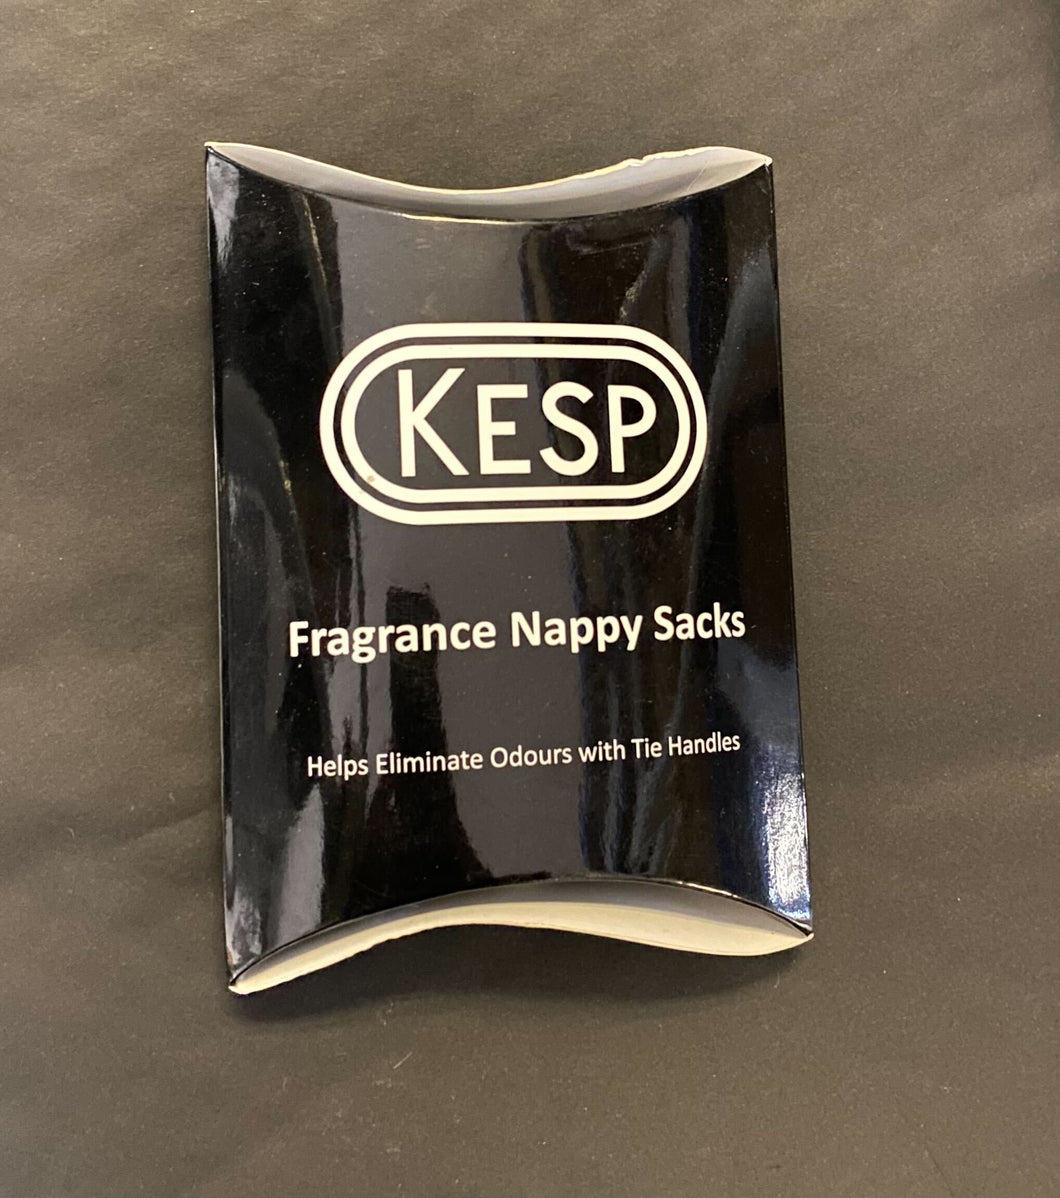 kesp fragrance nappy sacks